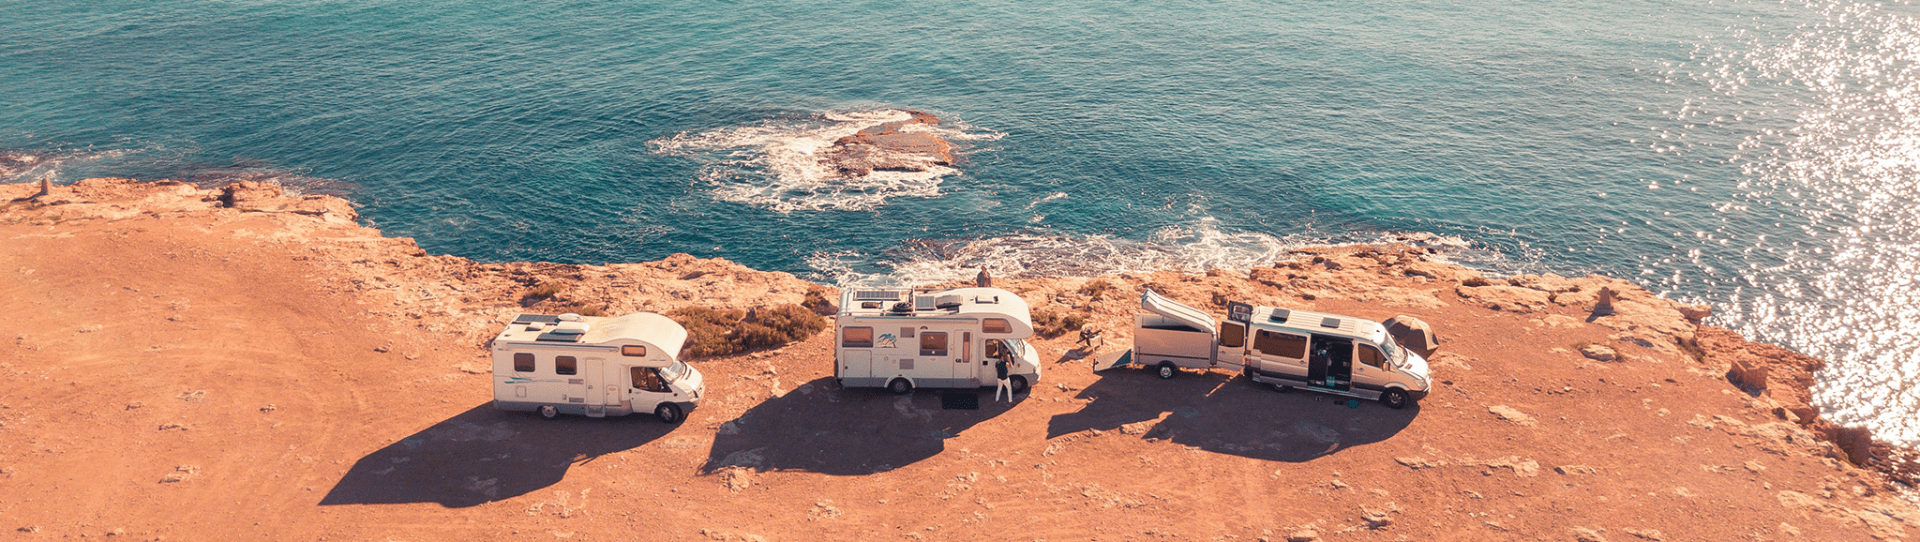 Foto: drie campers op de rotsen aan zee